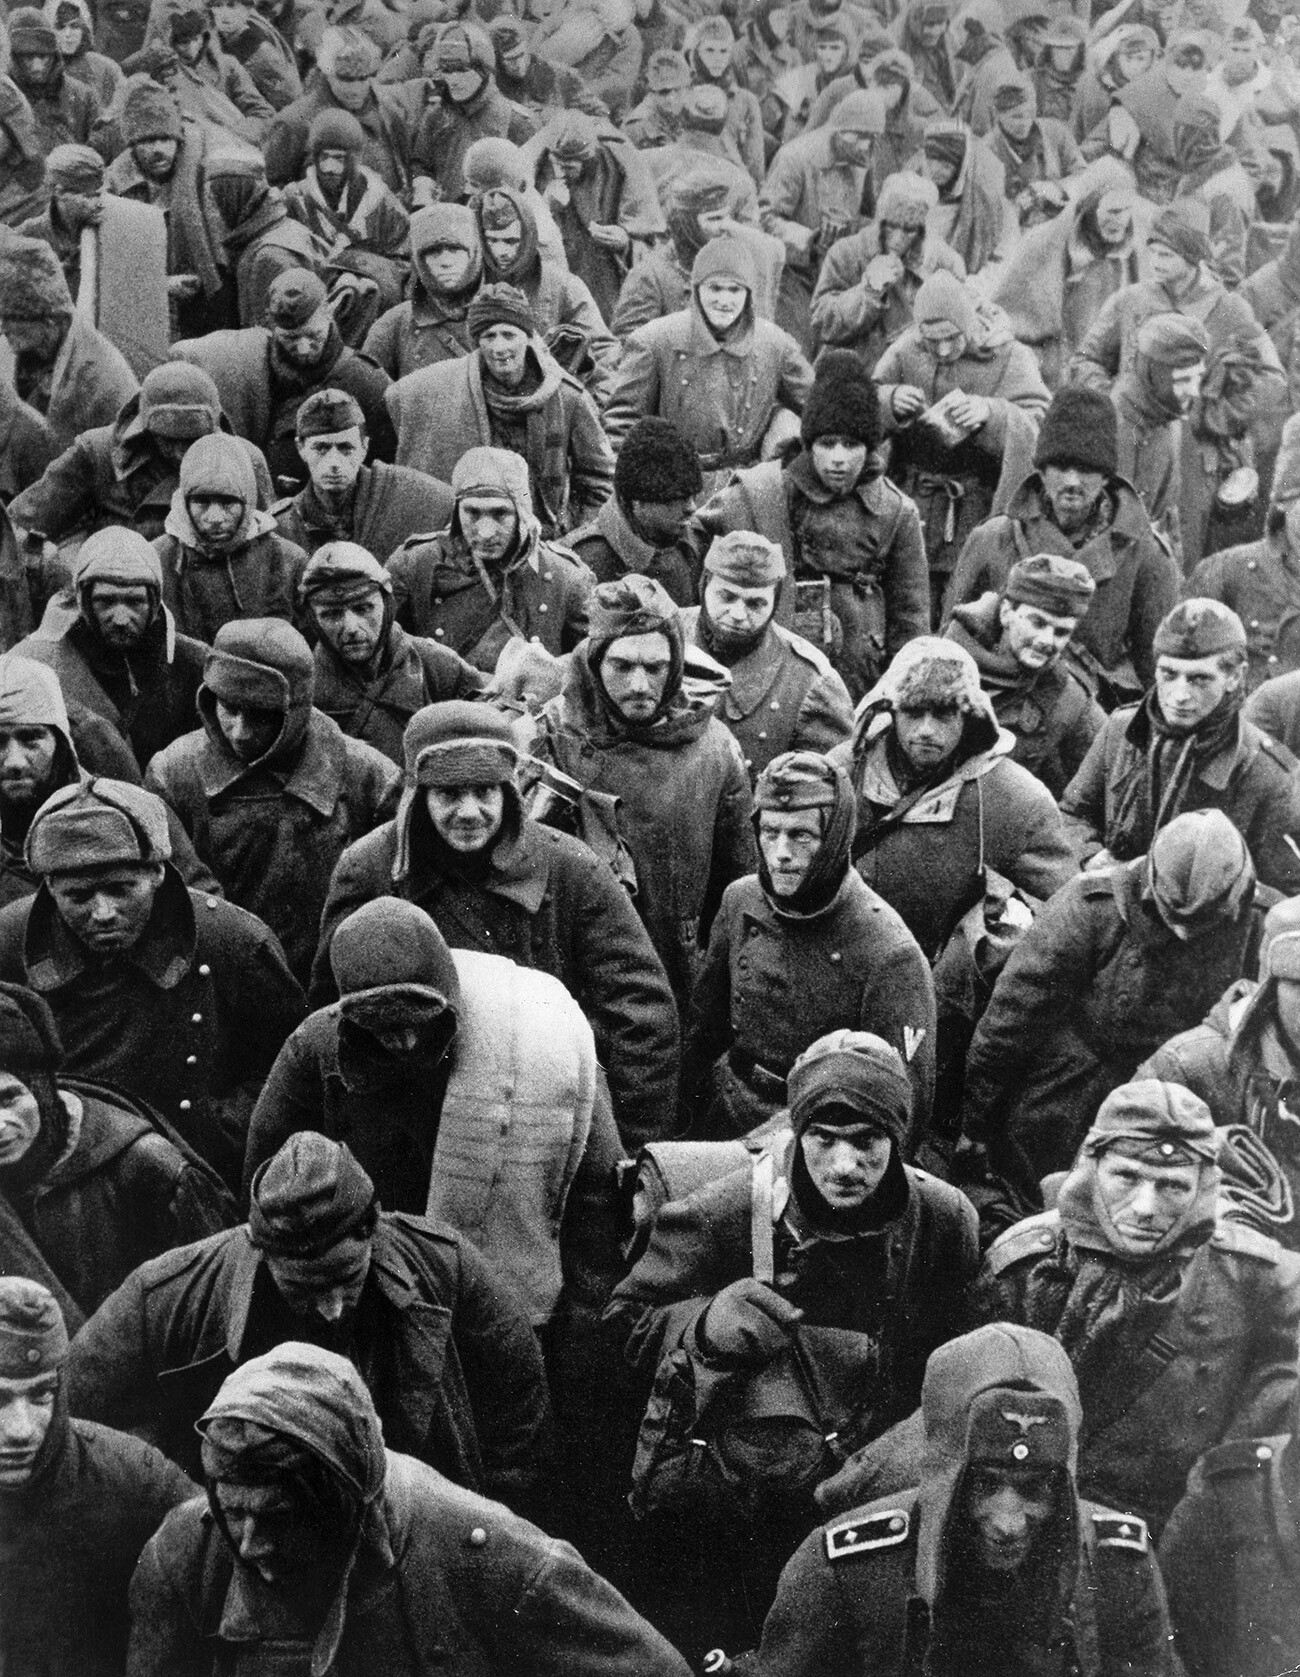 STALINGRAD: PREDAJA. Nemški vojaki po kapitulaciji pred sovjetskimi silami po bitki za Stalingrad med drugo svetovno vojno, 31. januar 1943.